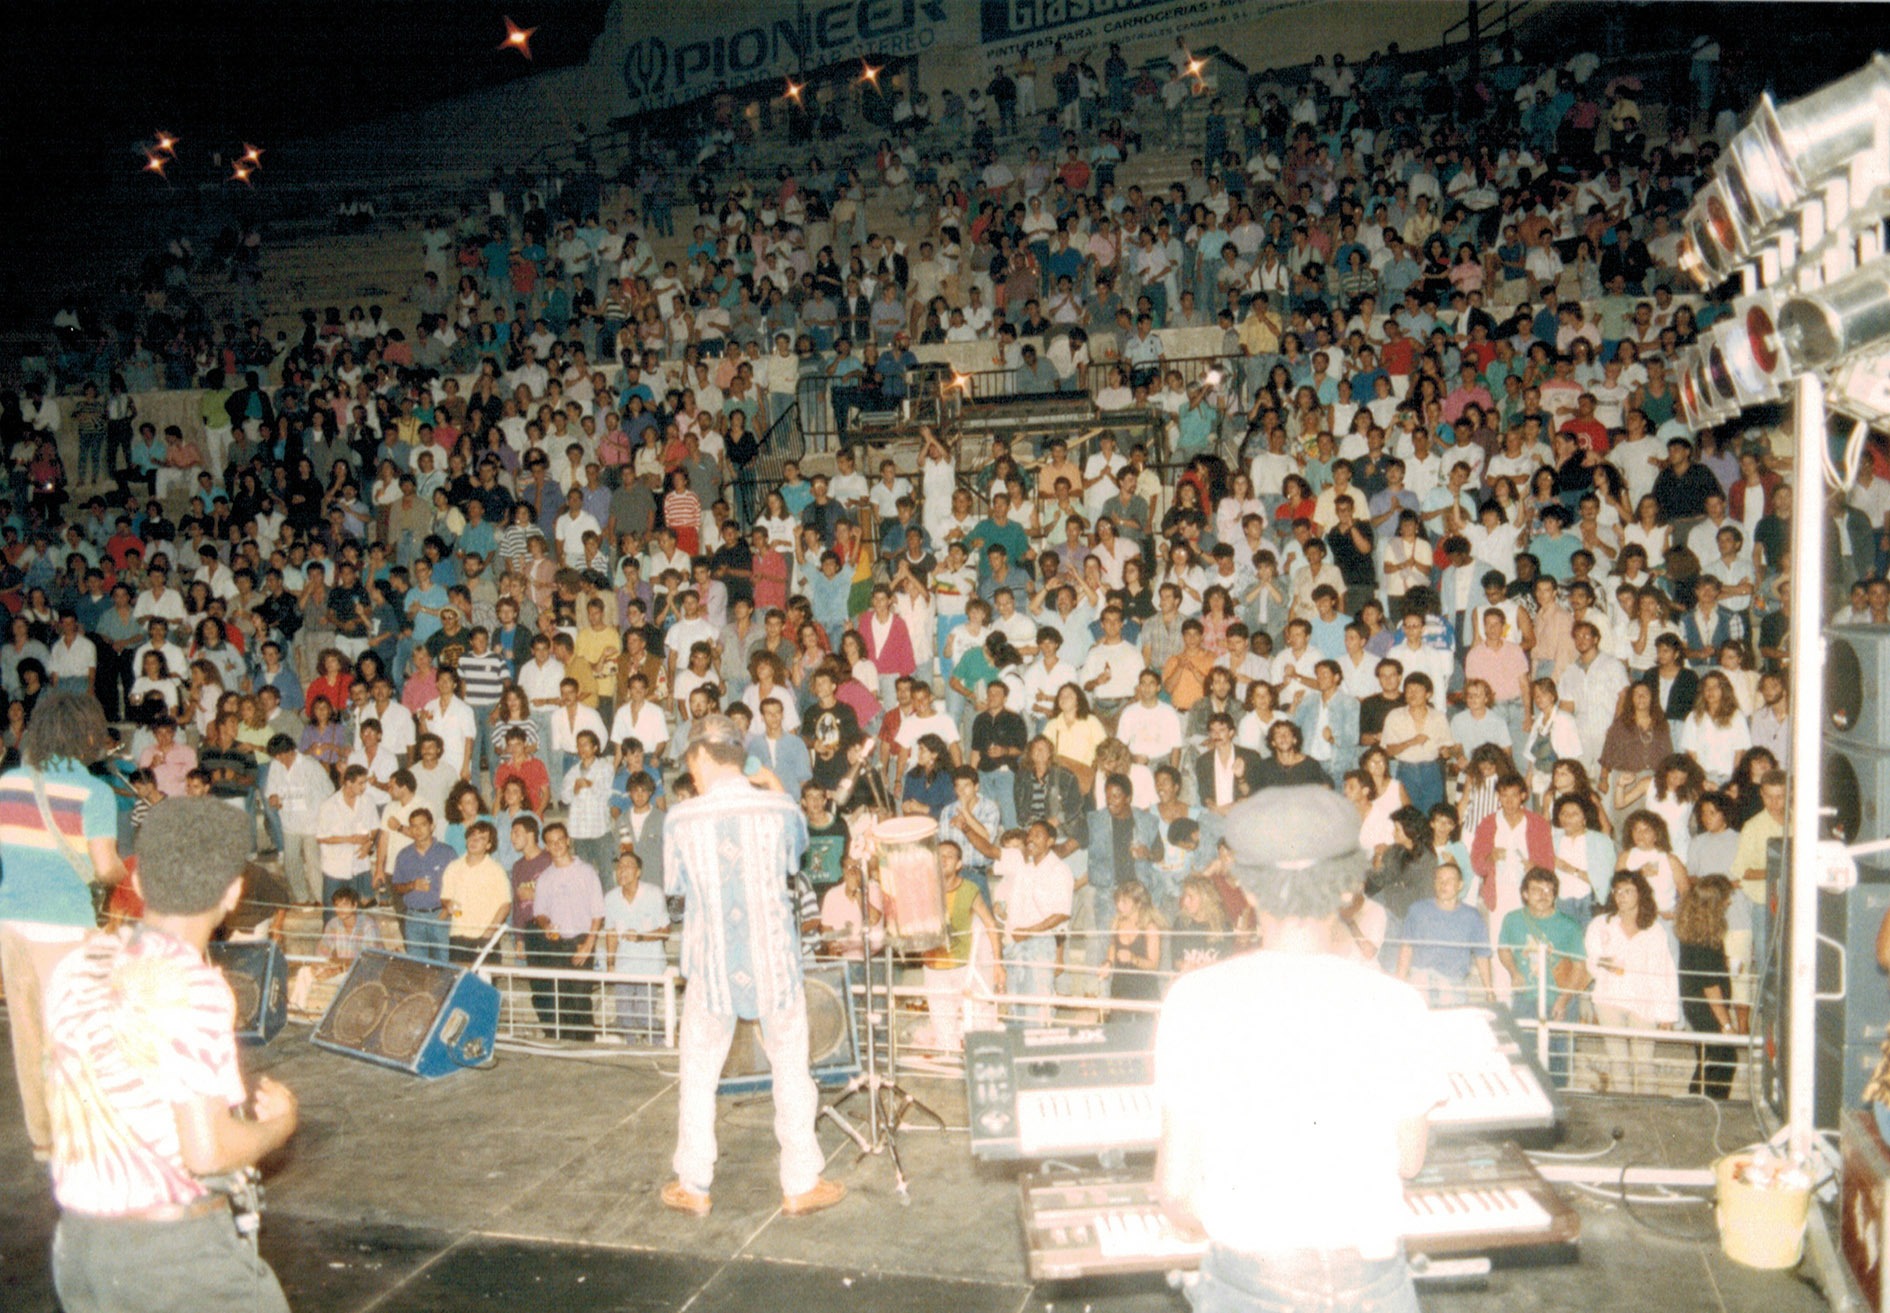 Concierto de Ziggy Marley en el Estadio Insular (Gran Canaria) en 1988